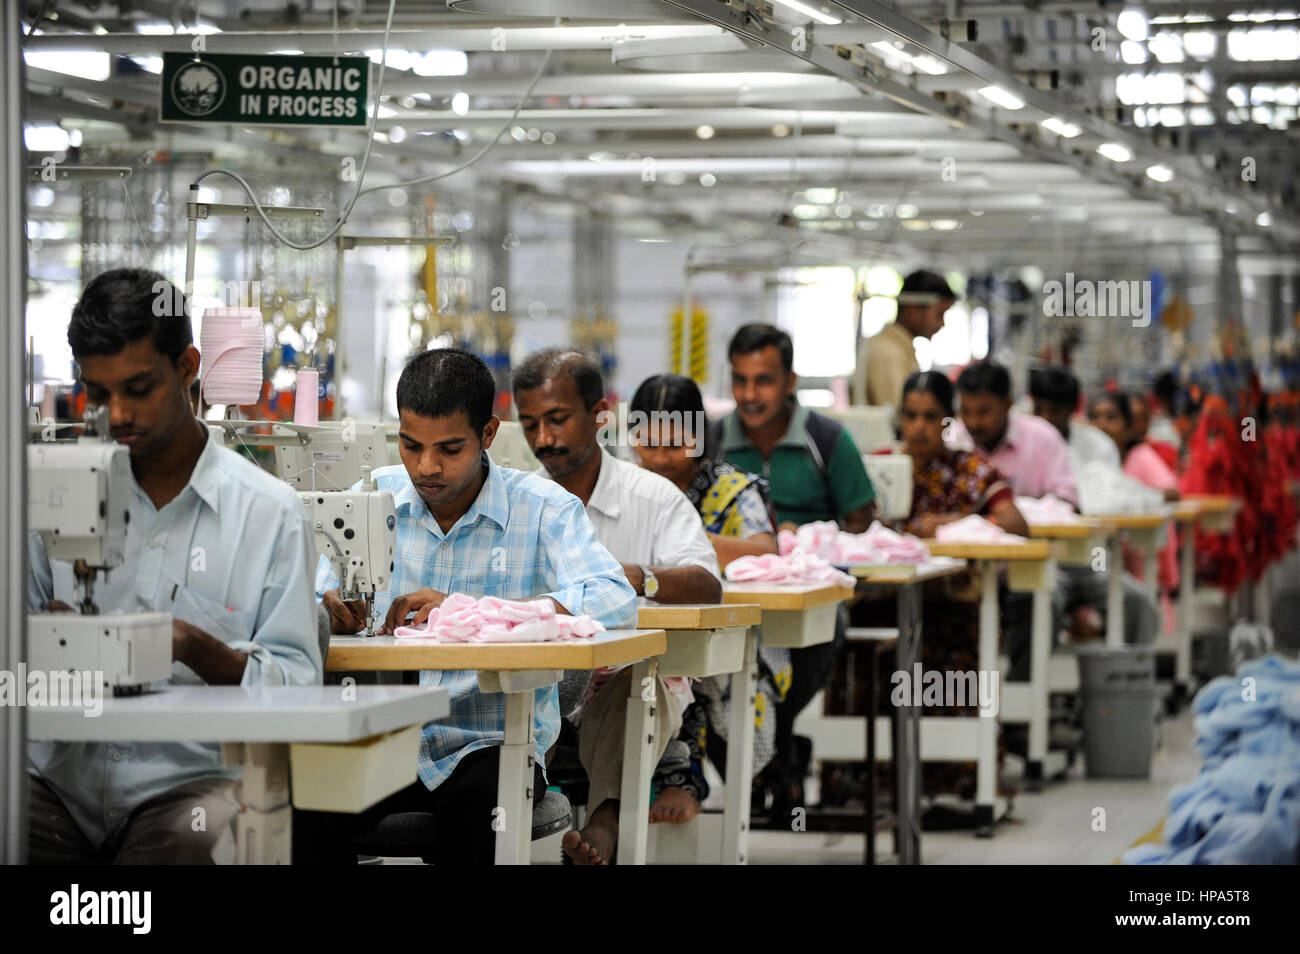 La India Tirupur , unidades textiles de comercio justo , siglo prendas produce orgánicos y de Comercio Justo Fairtrade para la exportación de prendas de vestir ropa - prendas de vestir ropa Foto de stock